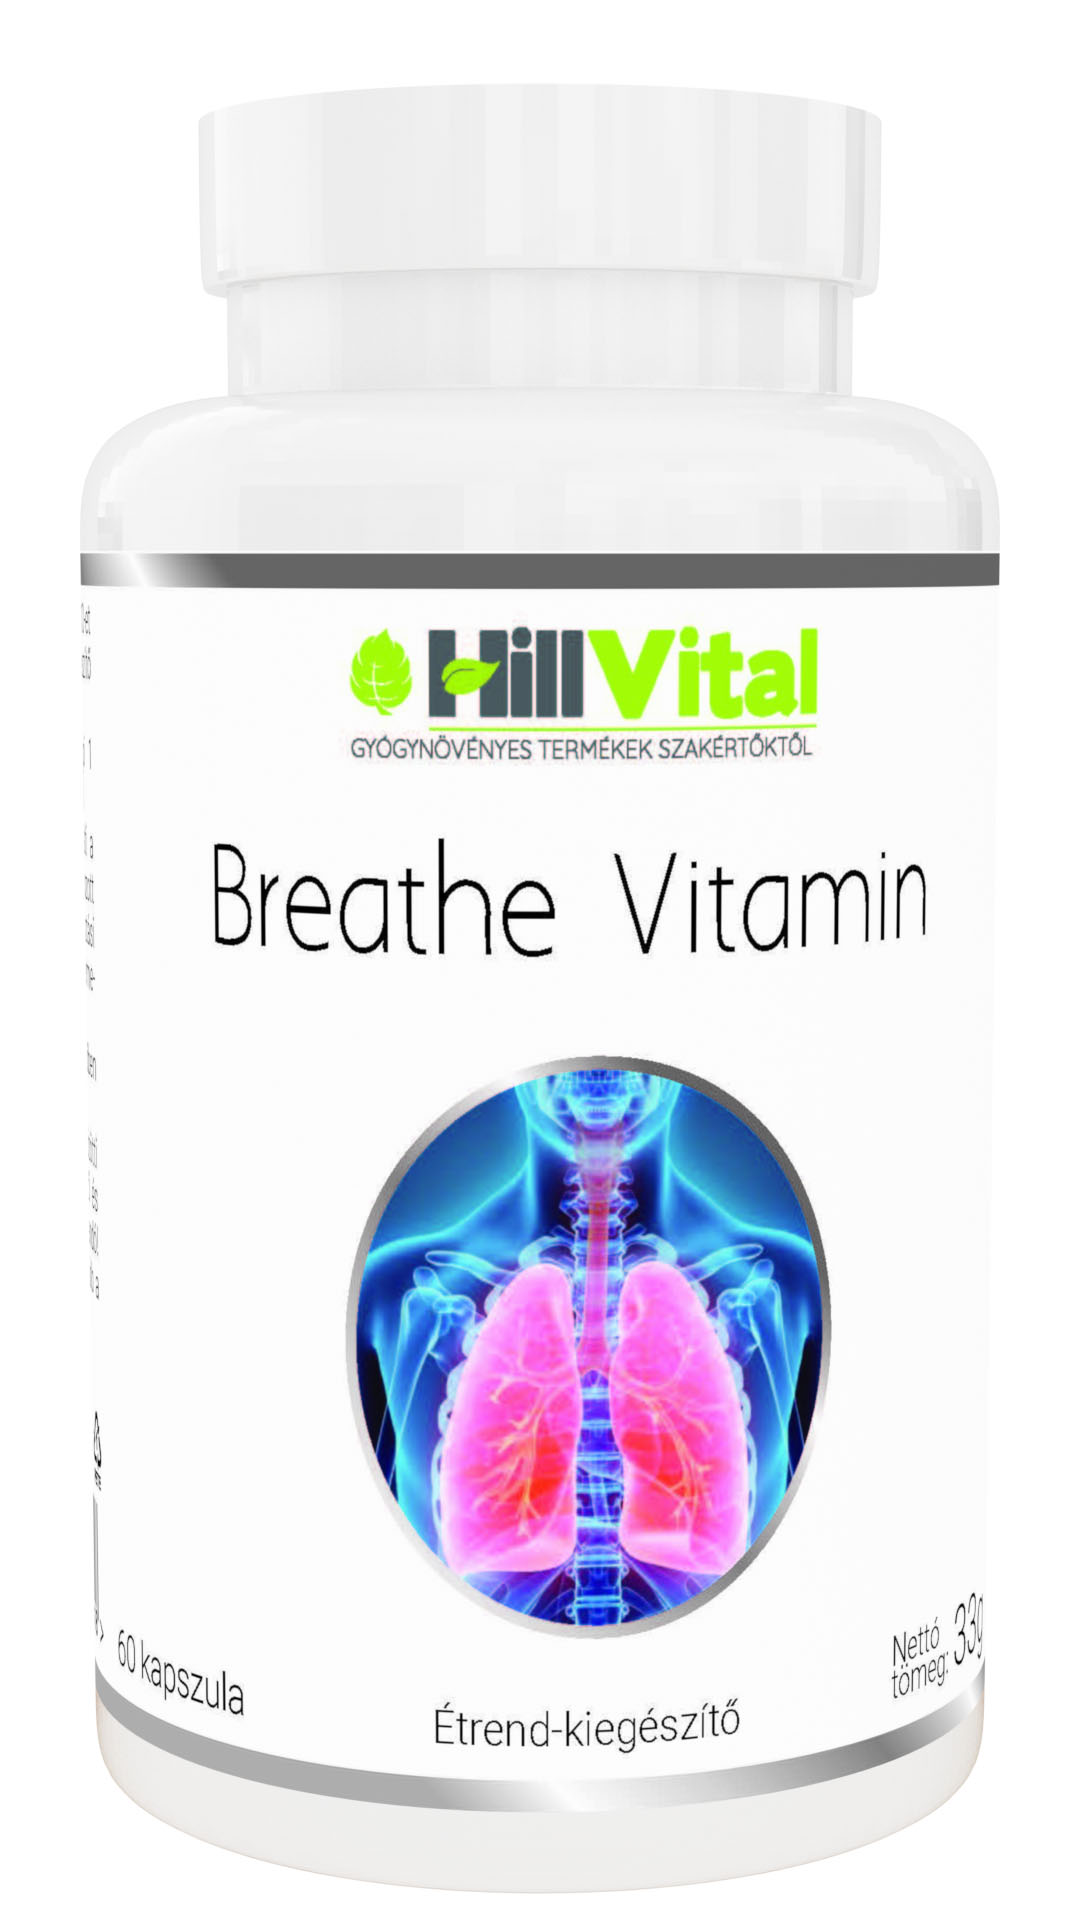 Breathe vitamin